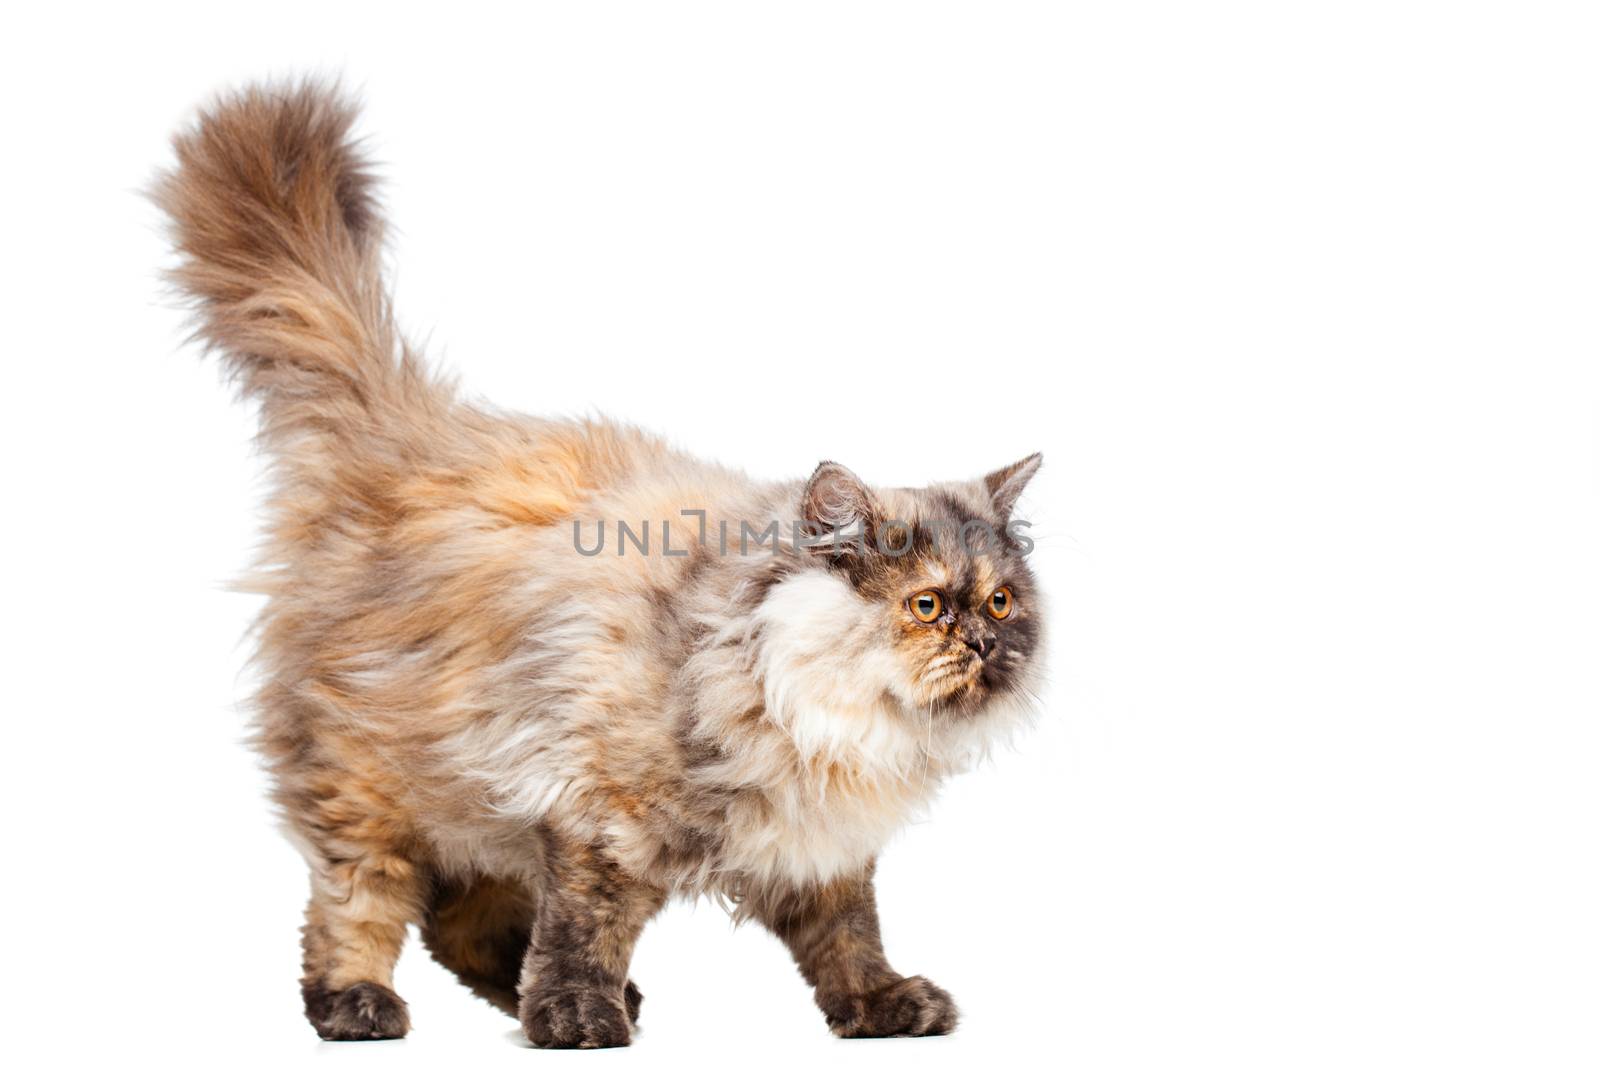 Chinchilla Persian cat by kokimk